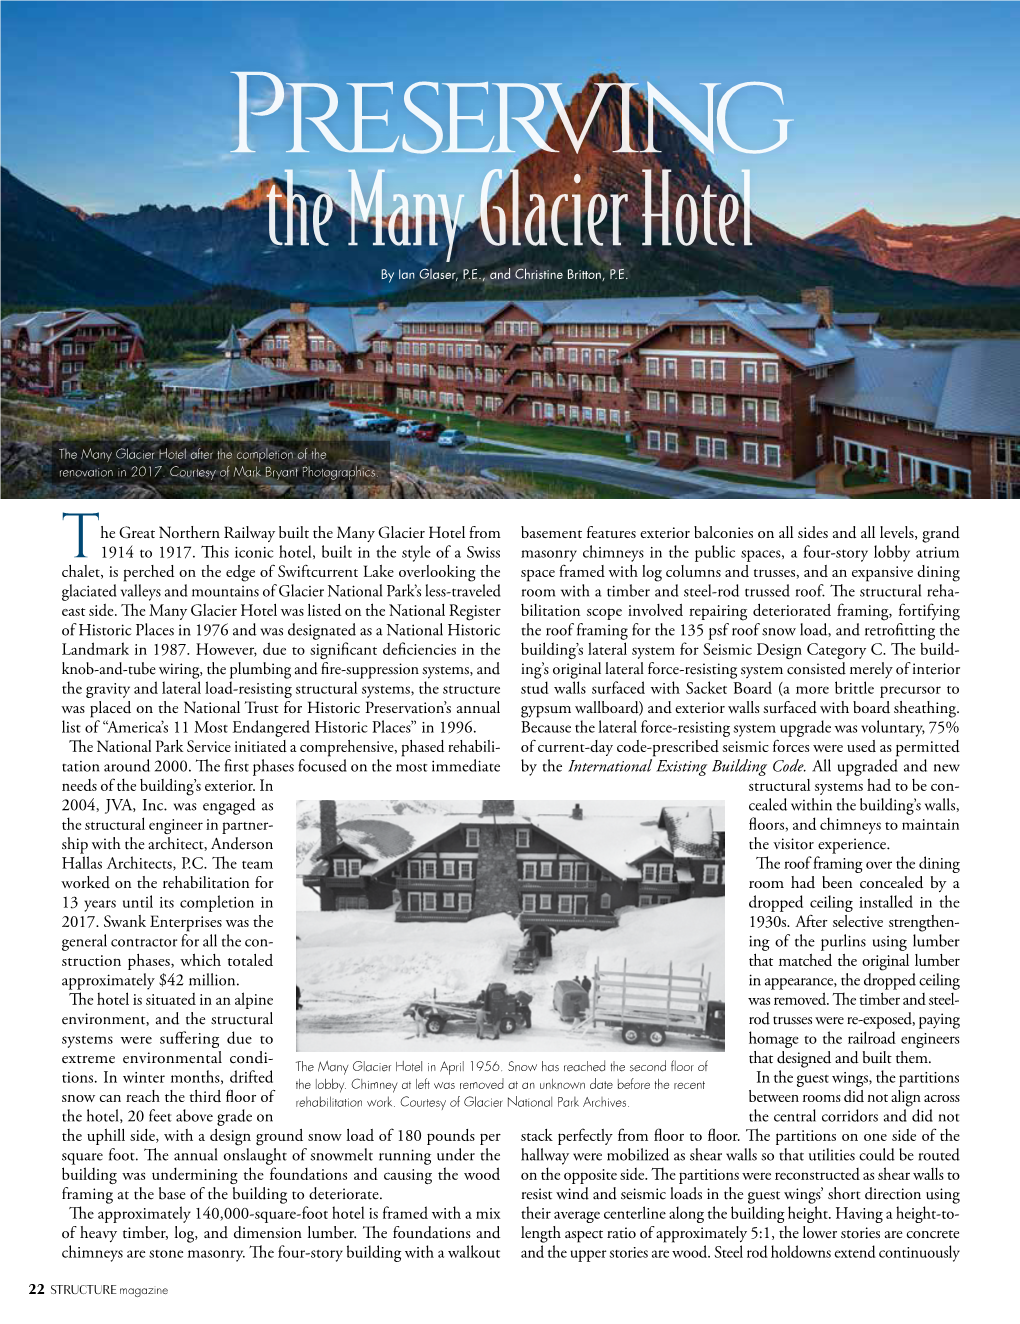 The Many Glacier Hotel by Ian Glaser, P.E., and Christine Britton, P.E